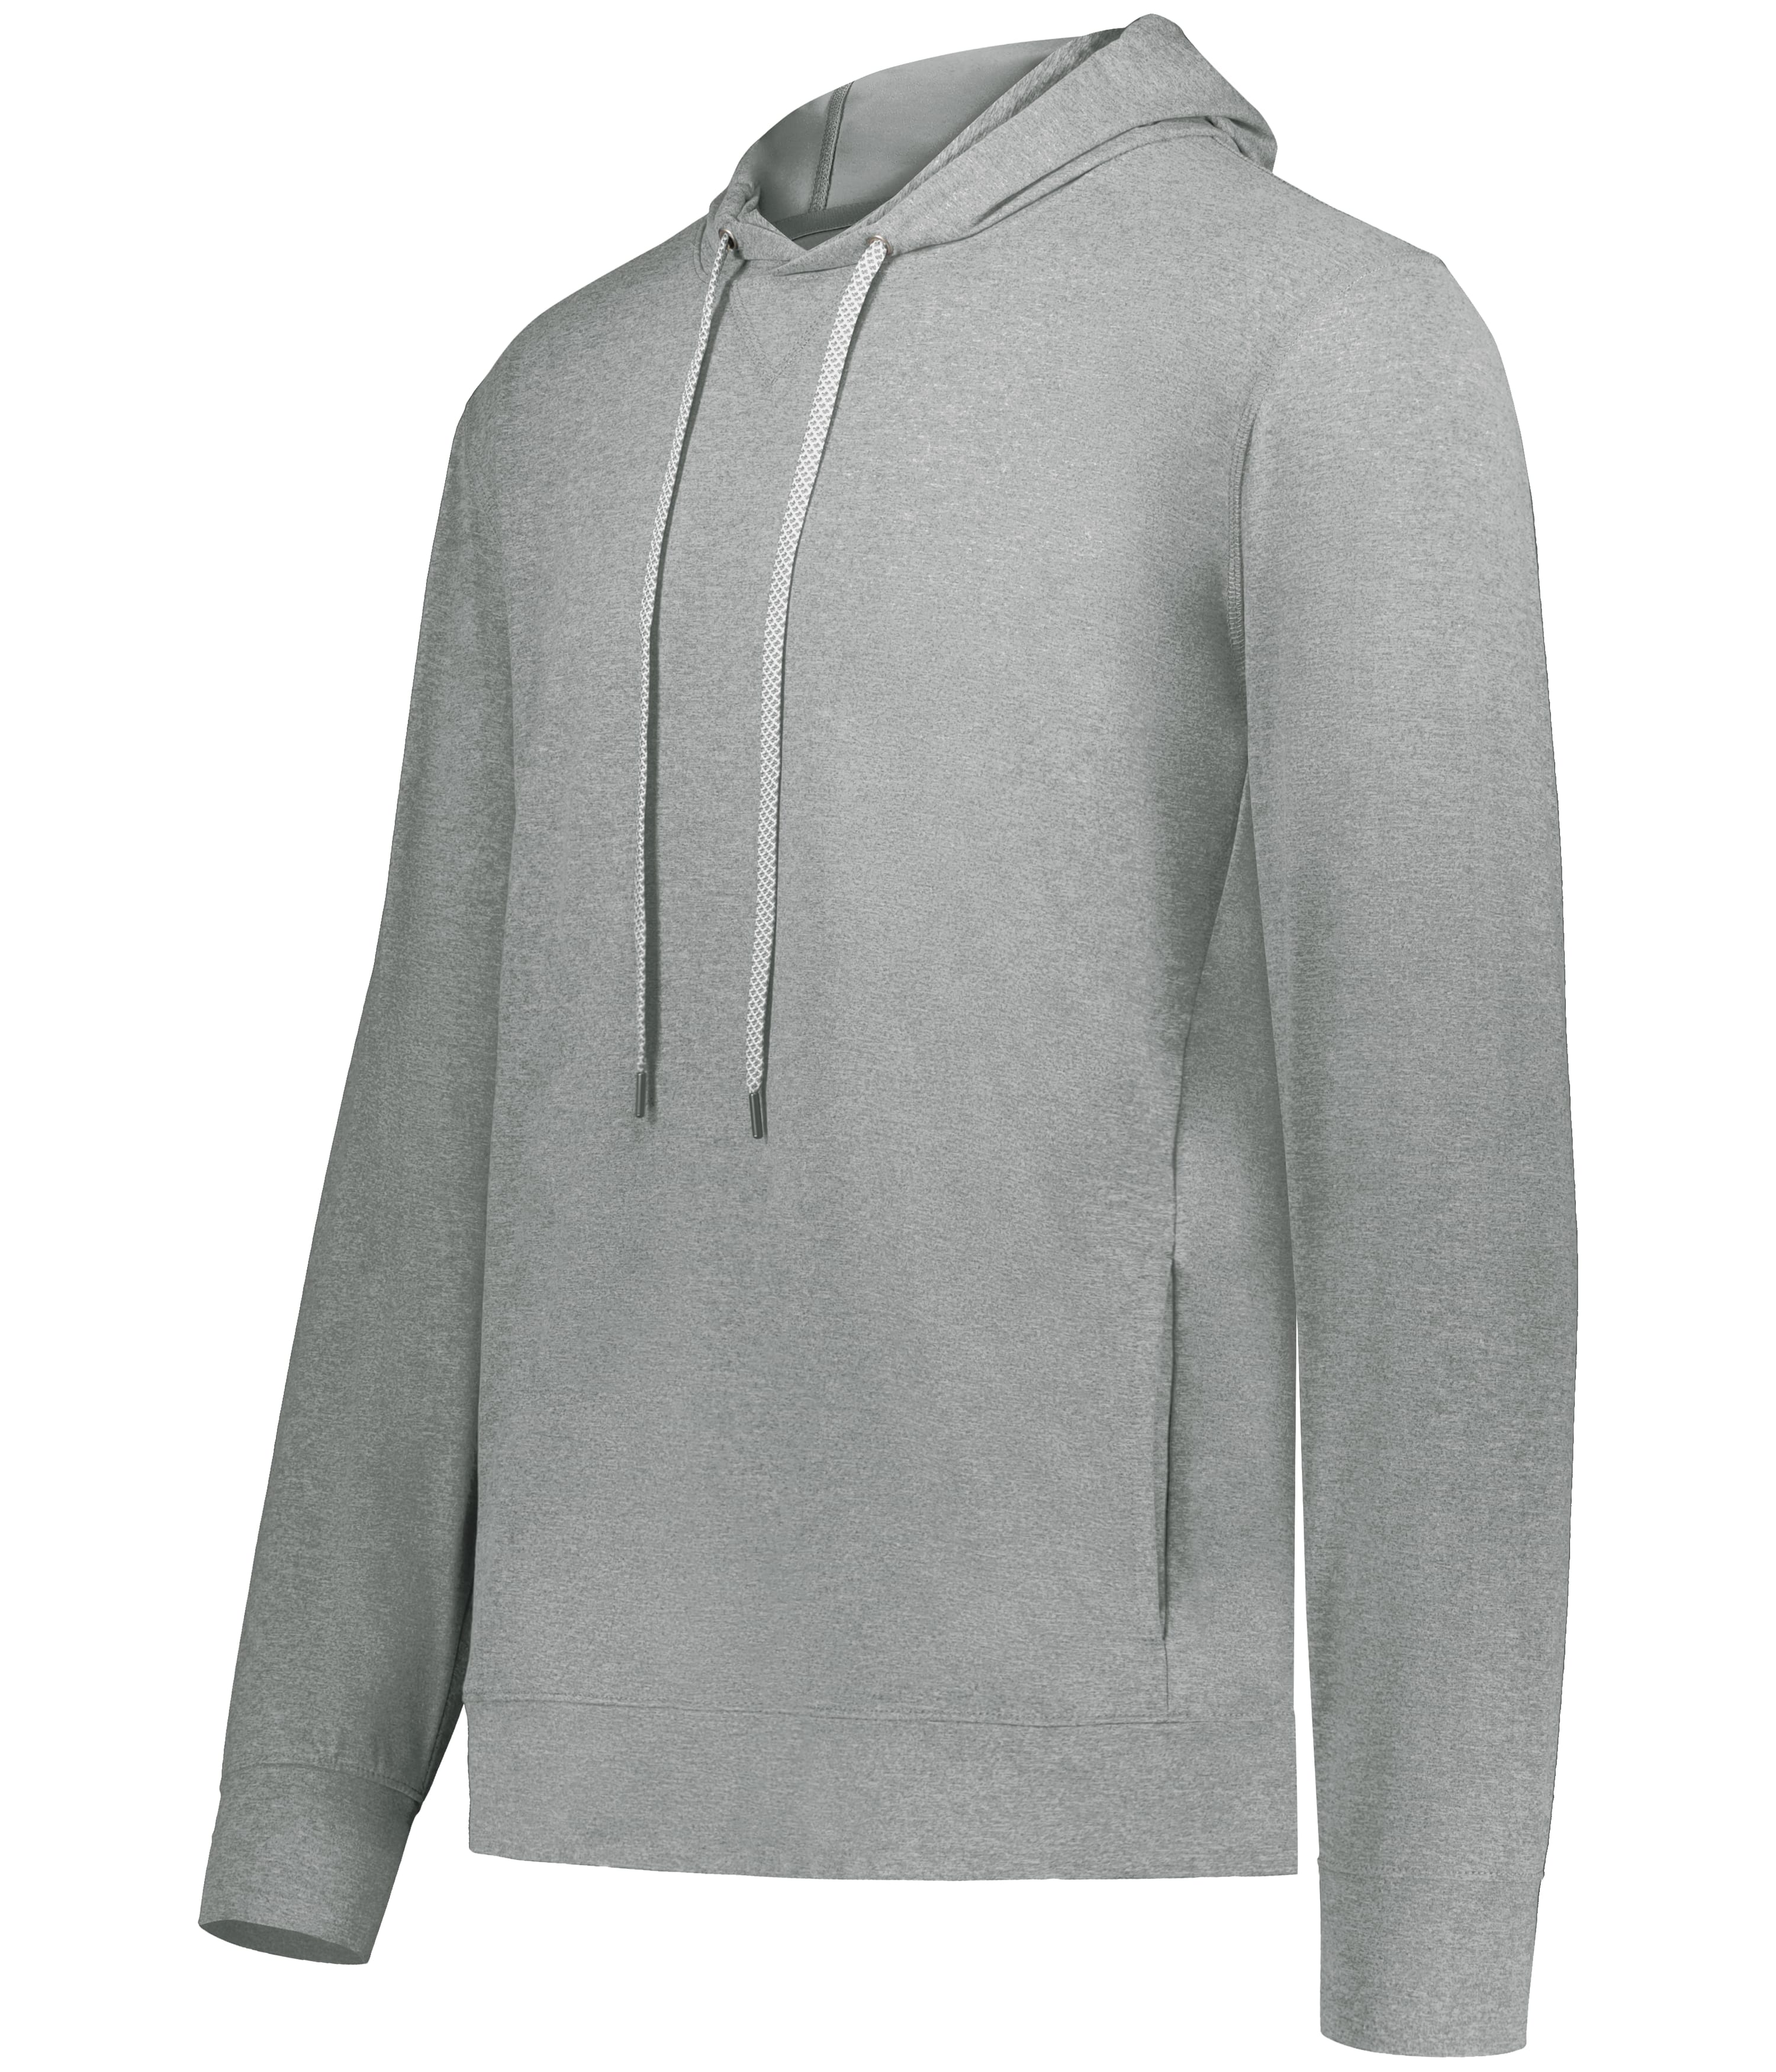 Augusta Sportswear 5506 Youth Wicking Fleece Hooded Sweatshirt - From $24.20